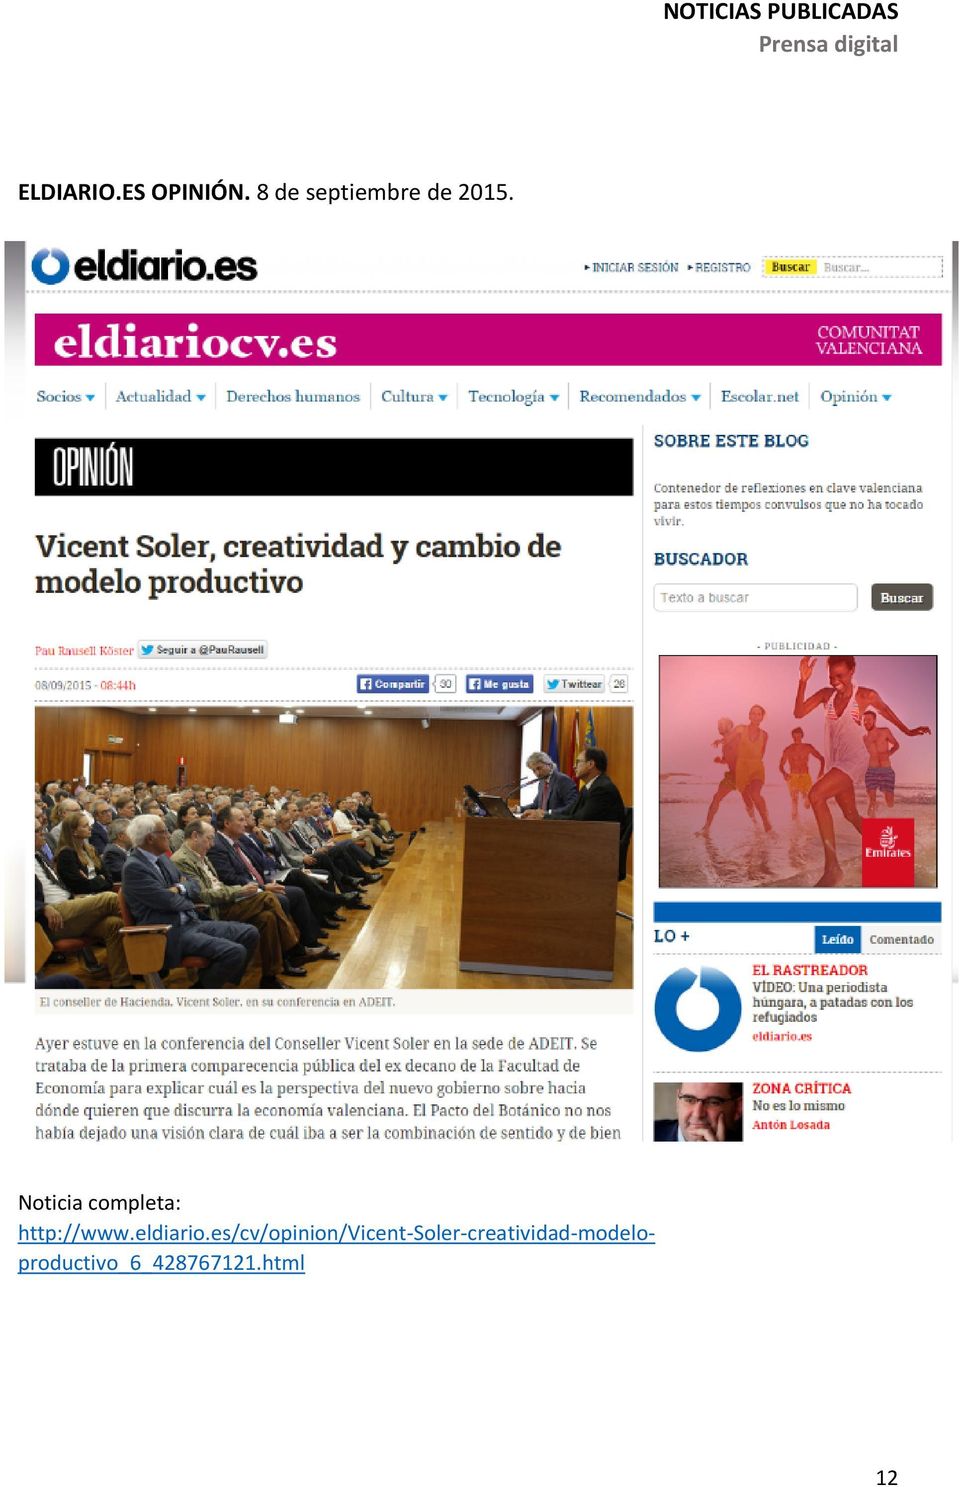 Noticia completa: http://www.eldiario.